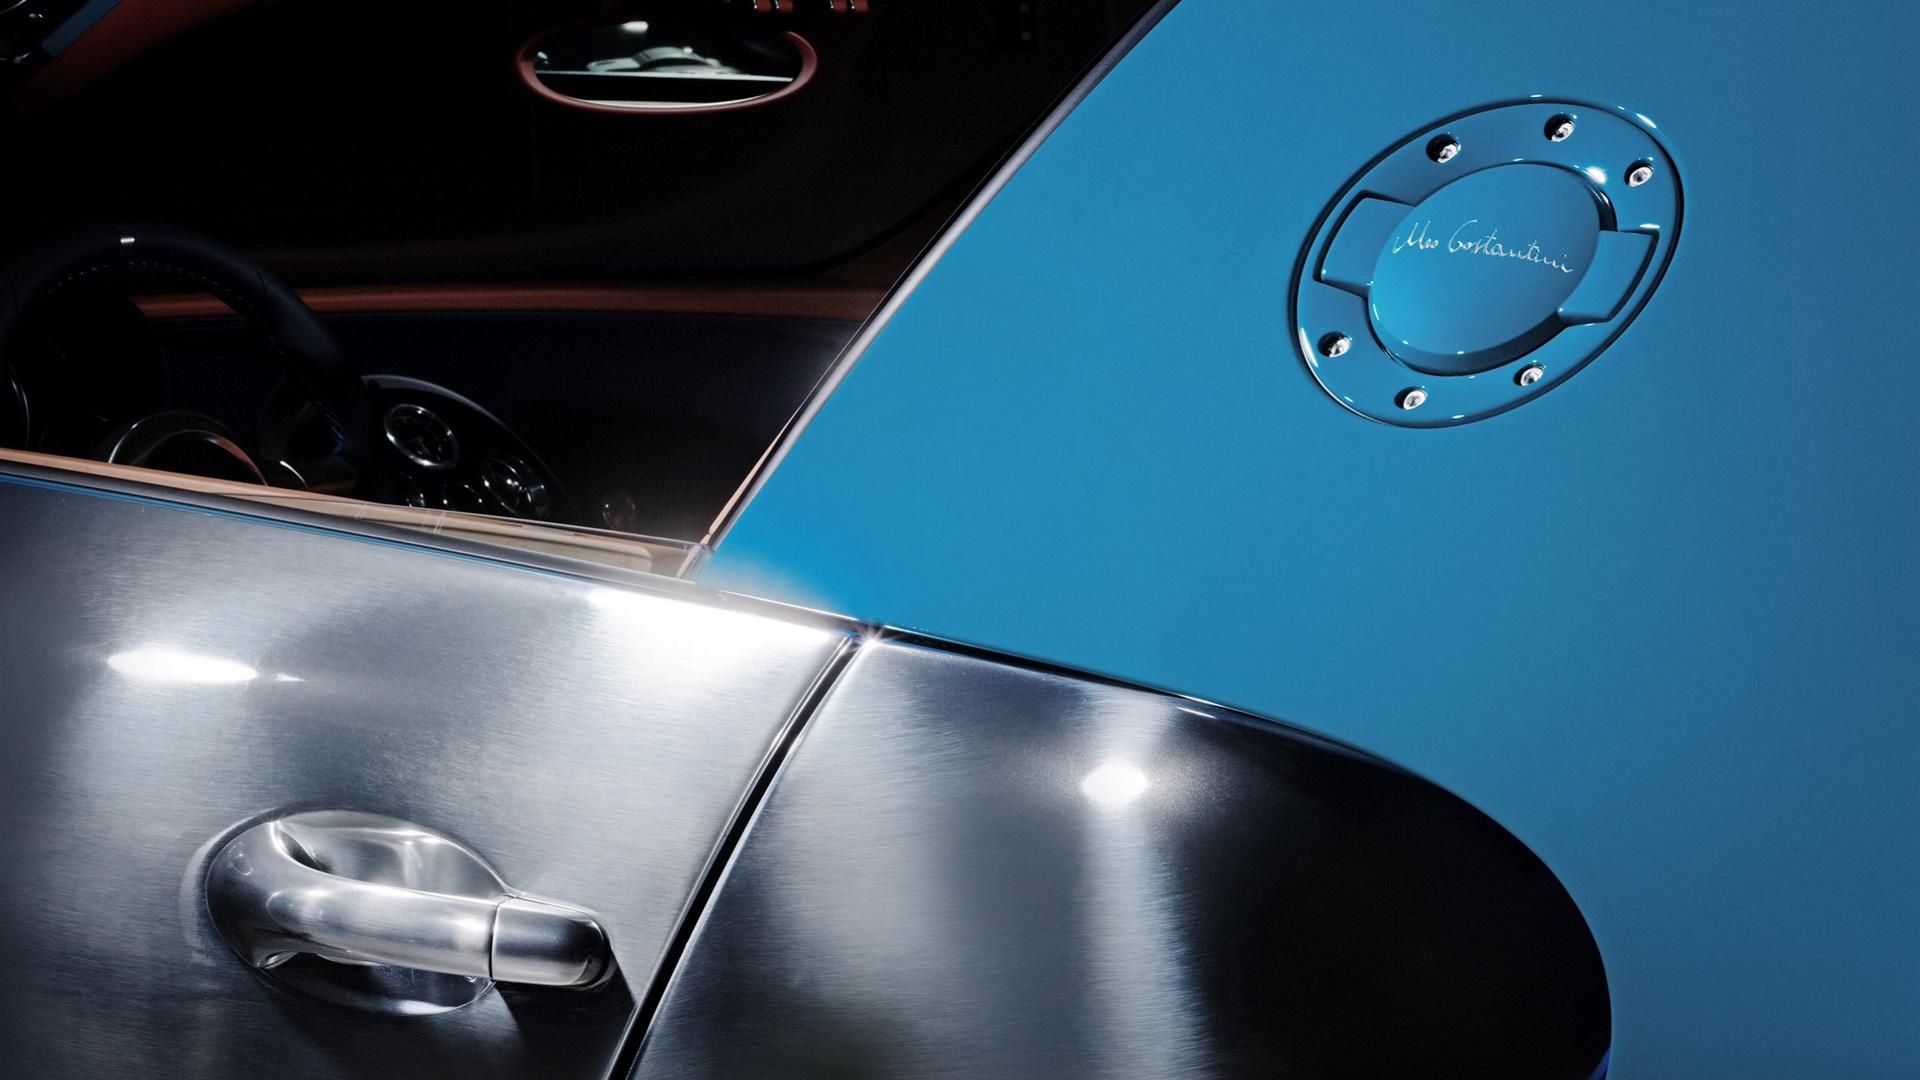 2013 Bugatti Veyron 16.4 Grand Sport Vitesse supercar fondos de pantalla de alta definición #4 - 1920x1080